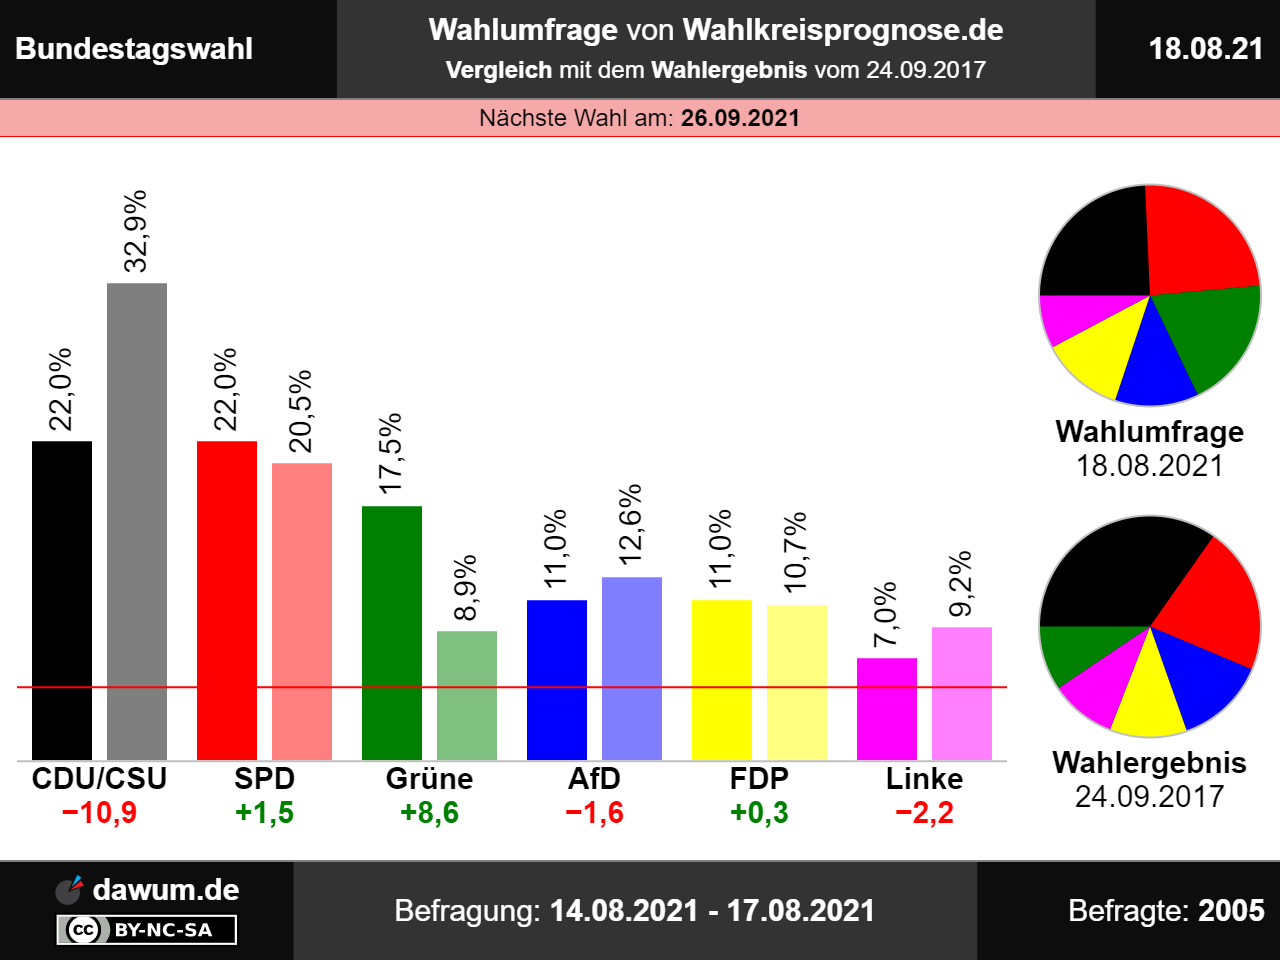 dawum.de-2021-08-18-Bundestag-Wahlkreisprognose_de-Vergleich_mit_Wahlergebnis.png